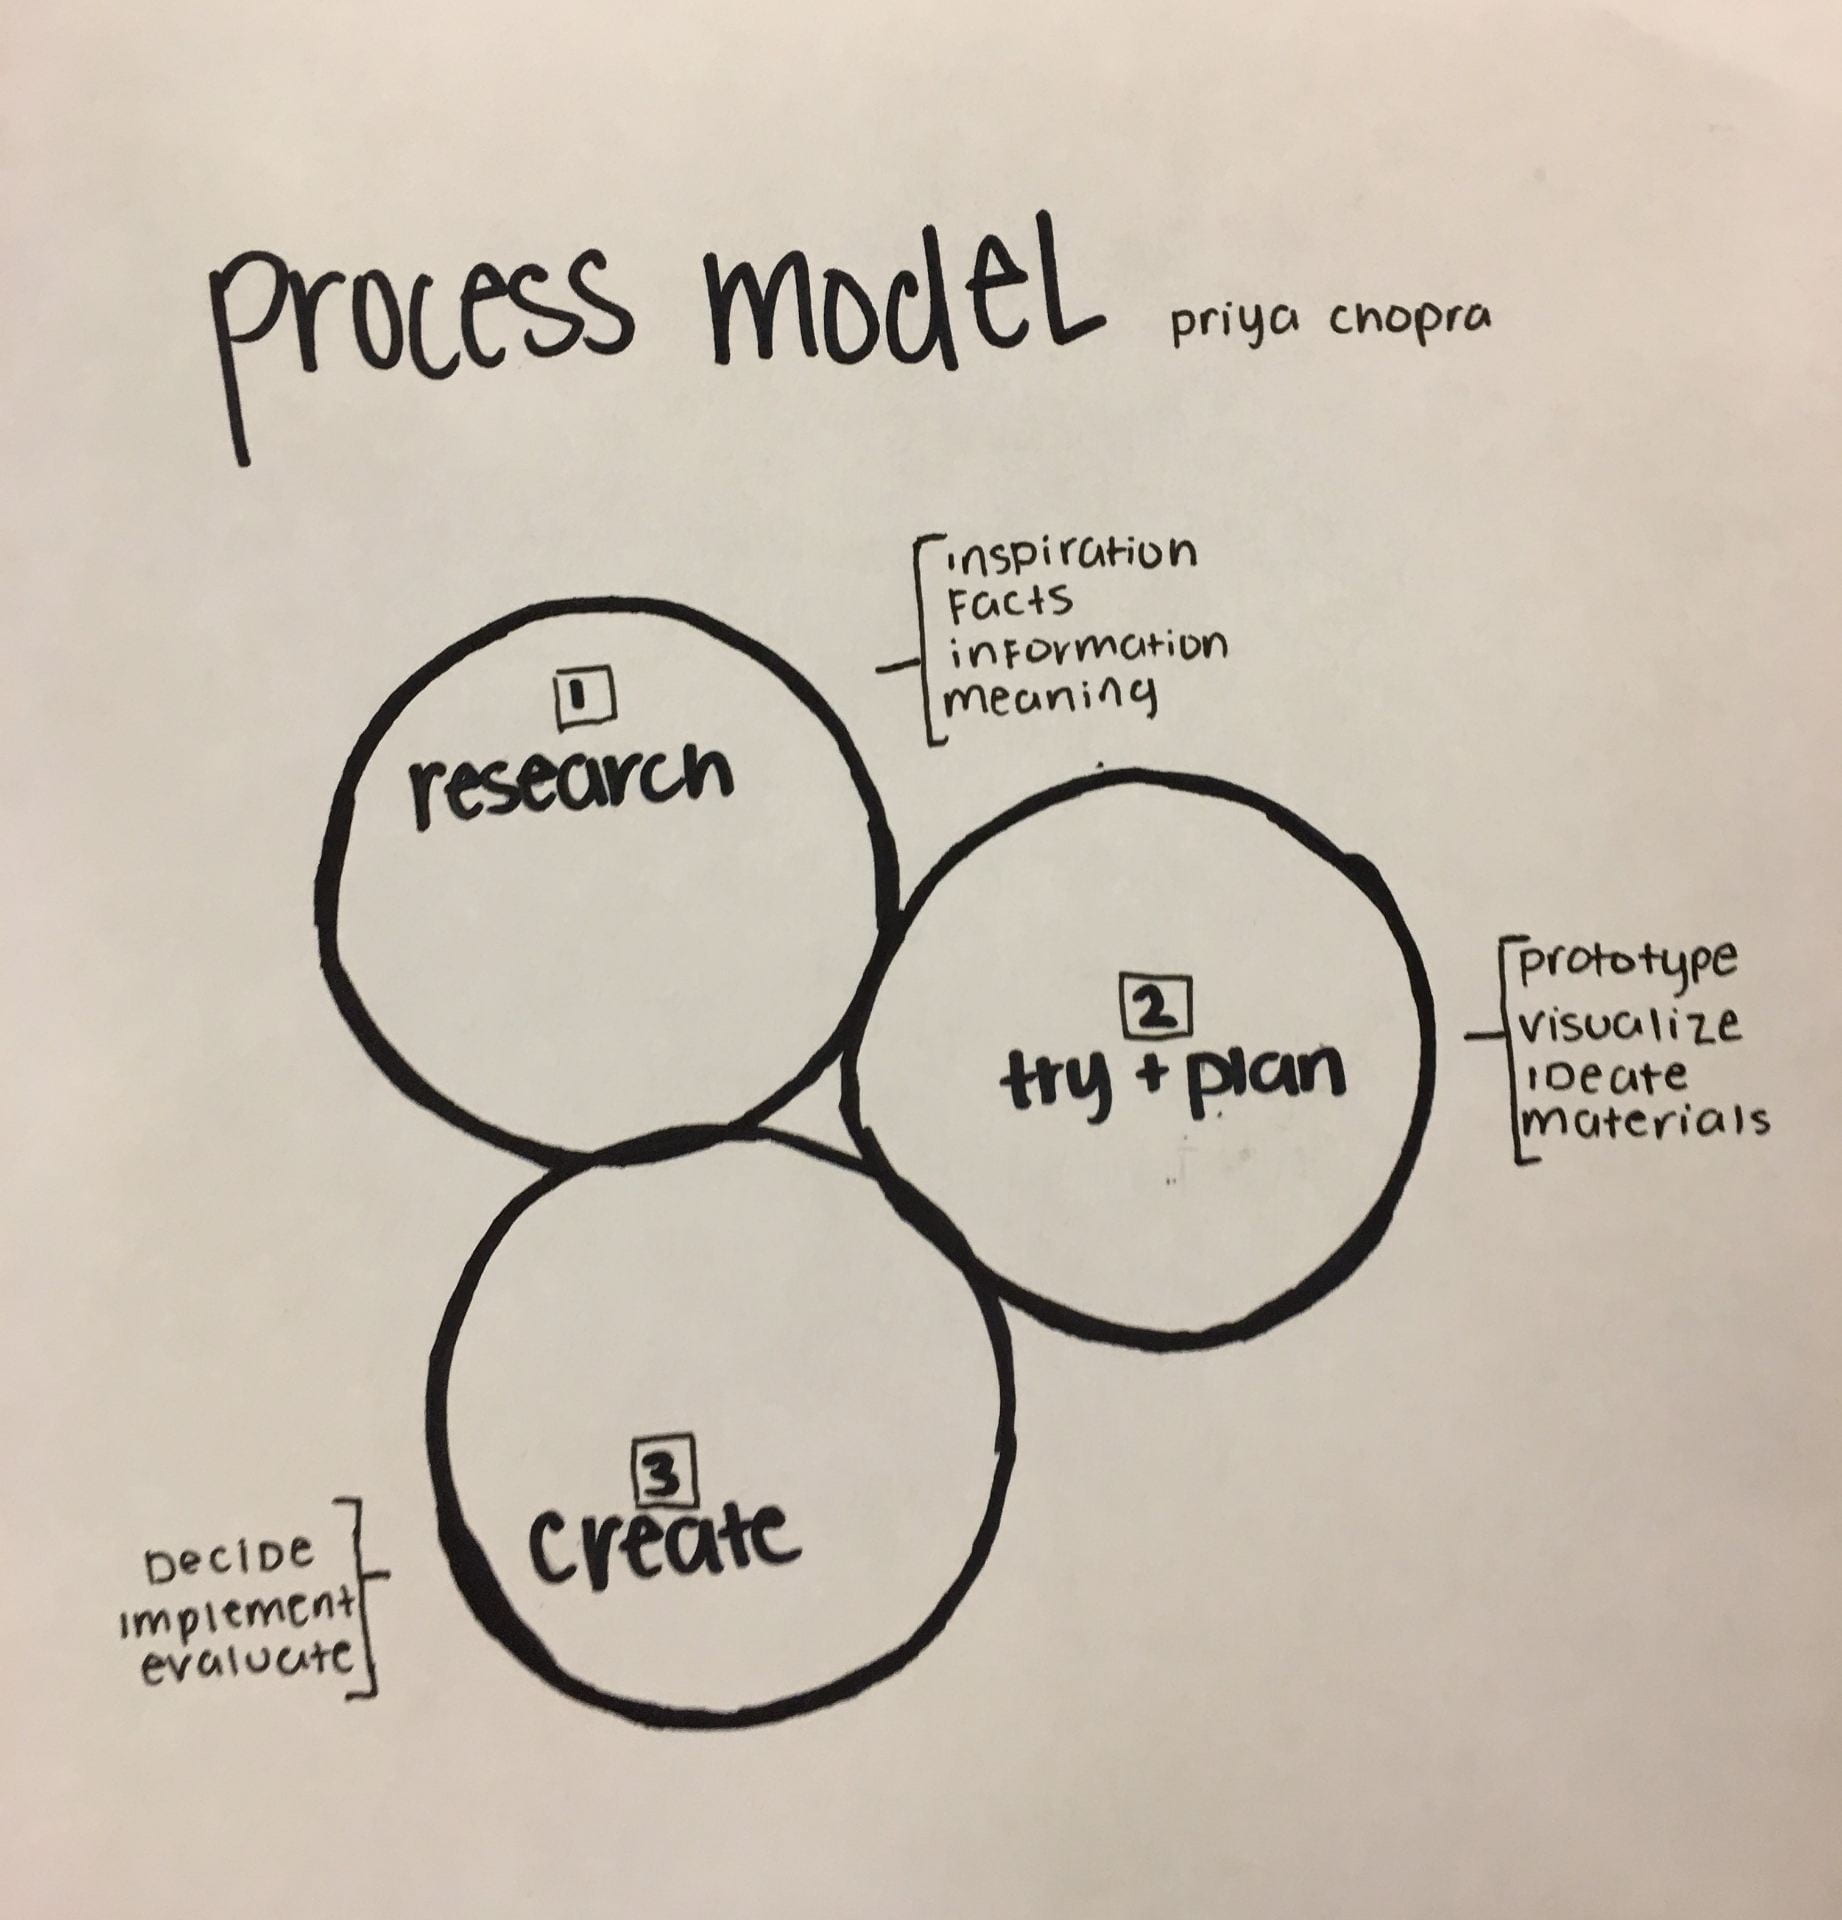 Bridge 4 Reflection and Process Model – May 2019